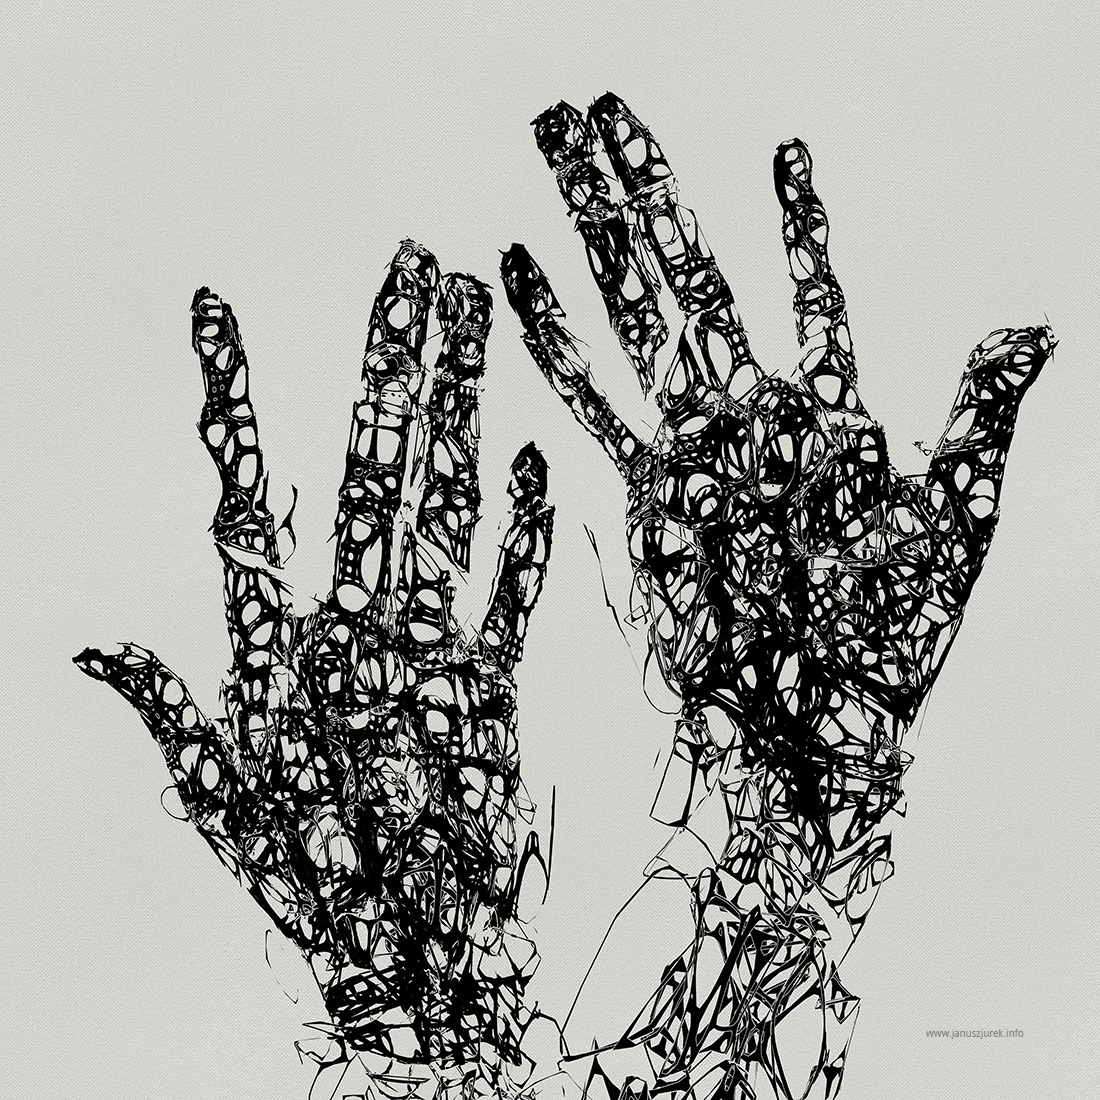 #jurek #januszjurek #procedural #generative #book cover #cover   #Poster #hand